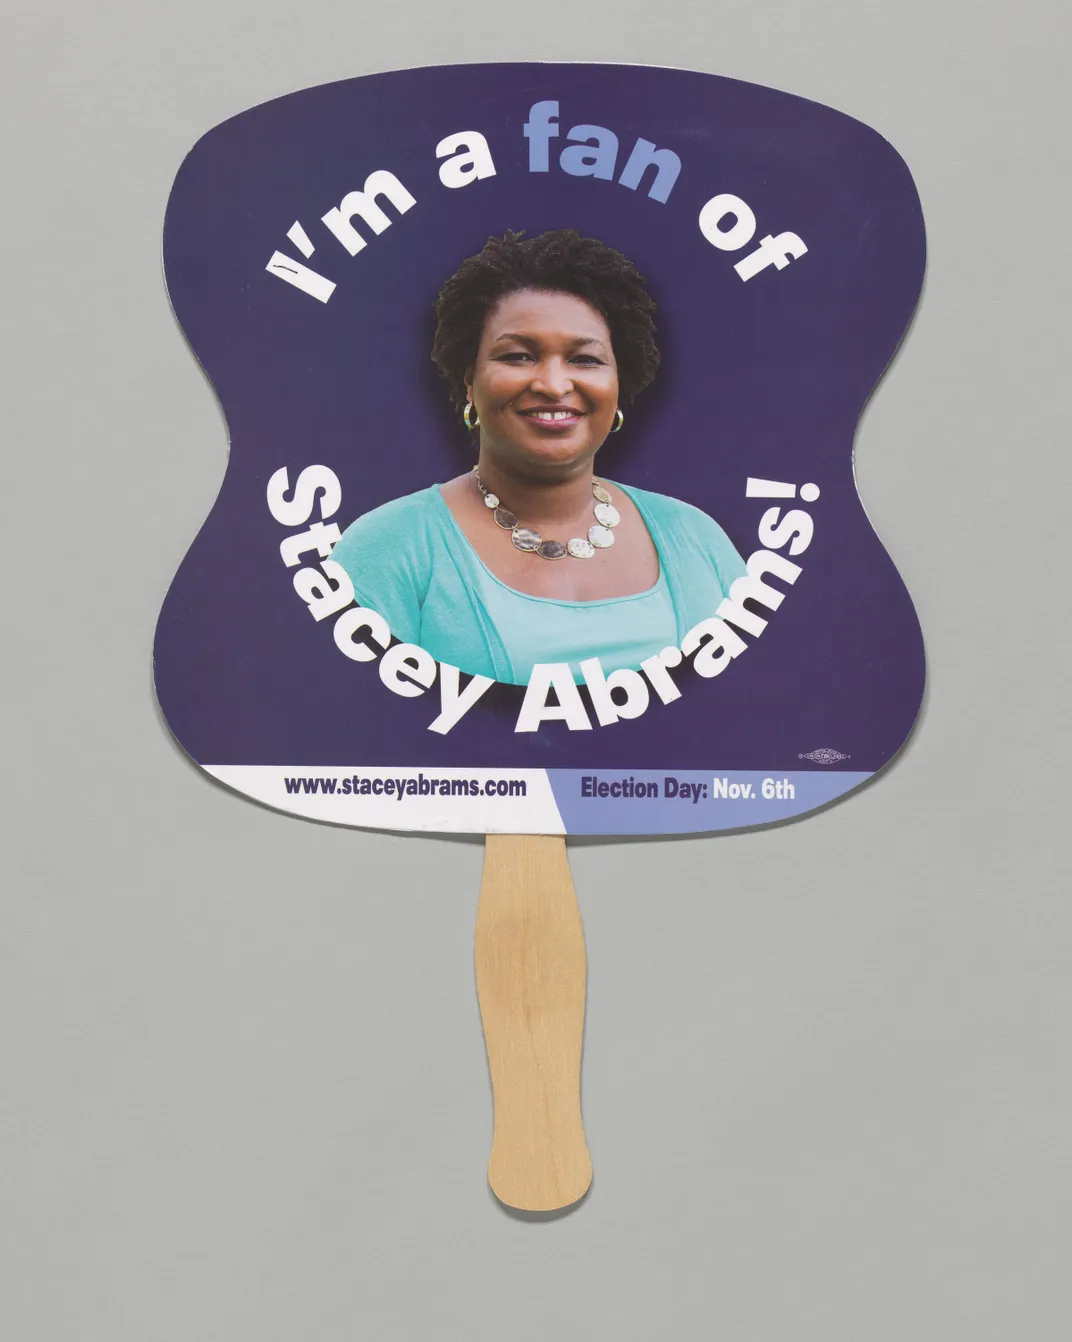 "I'm a Fan of Stacey Abrams" fan